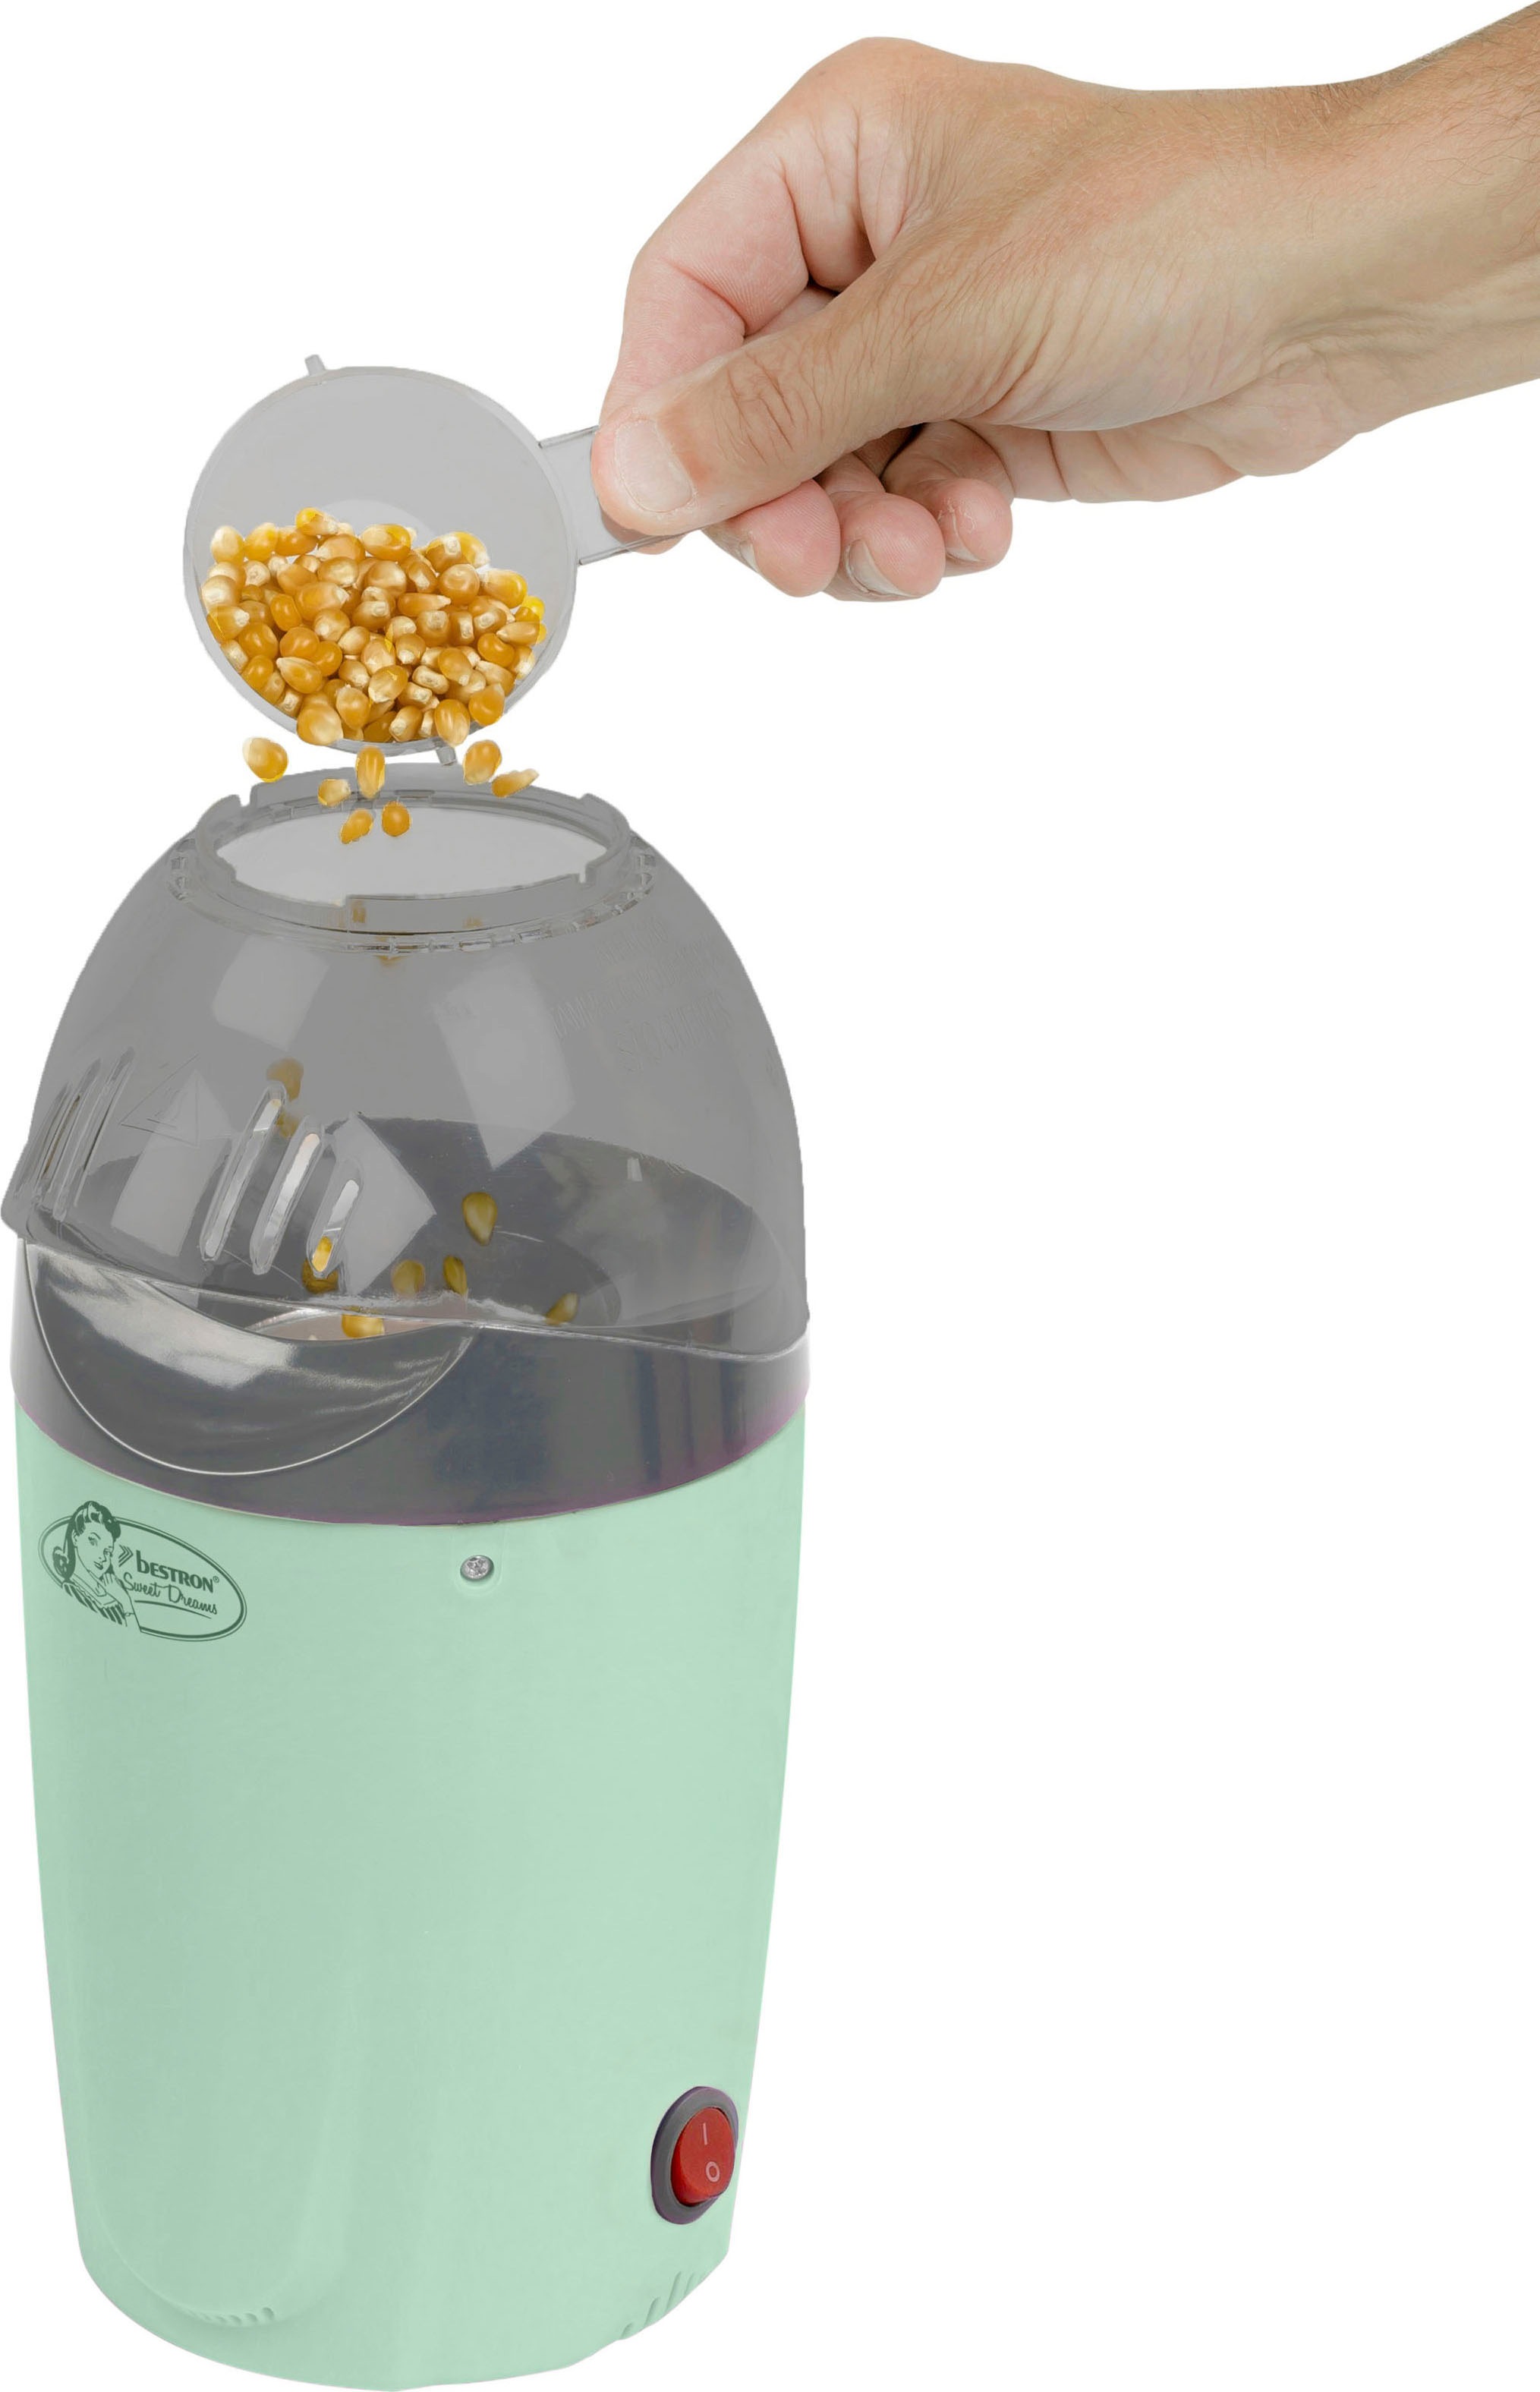 bestron Popcornmaschine »APC1007M«, Heißluft, fertig in 2 Min., fettfreie  Zubereitung mit 3 Jahren XXL Garantie